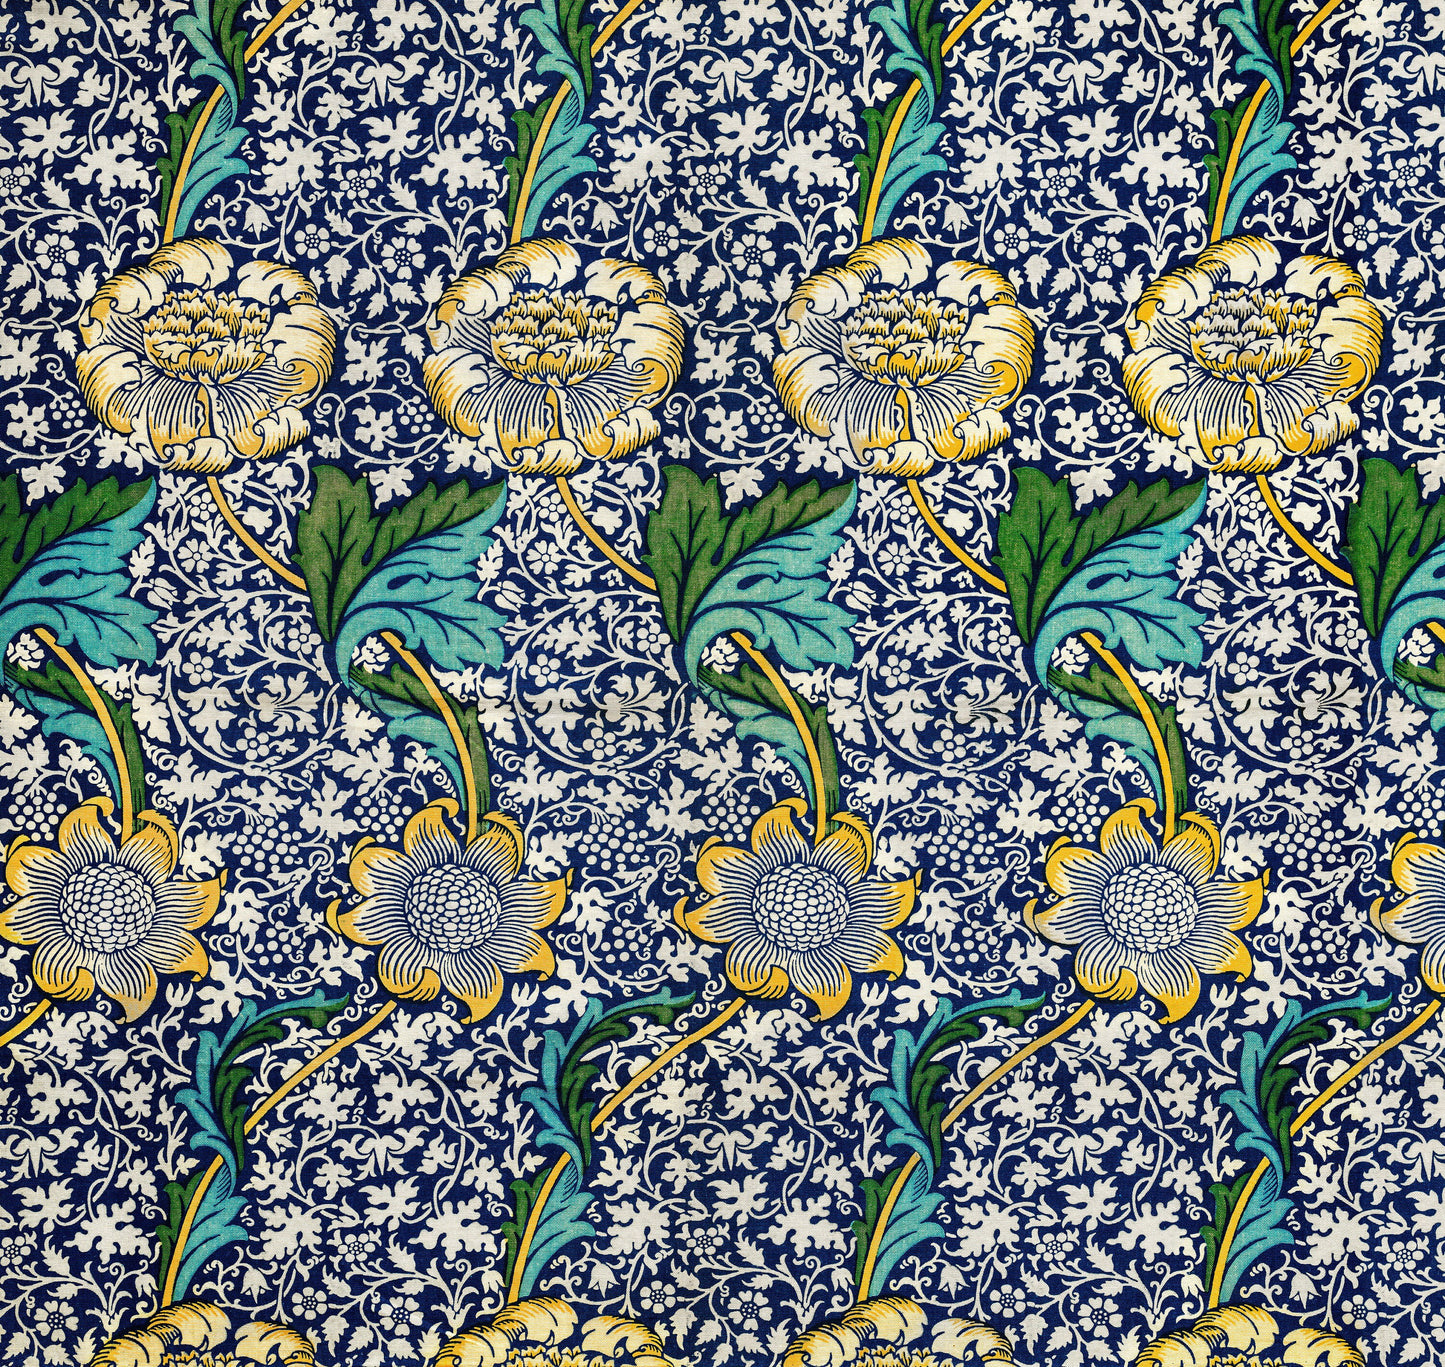 William Morris Design Patterns Set 3 [22 Images]